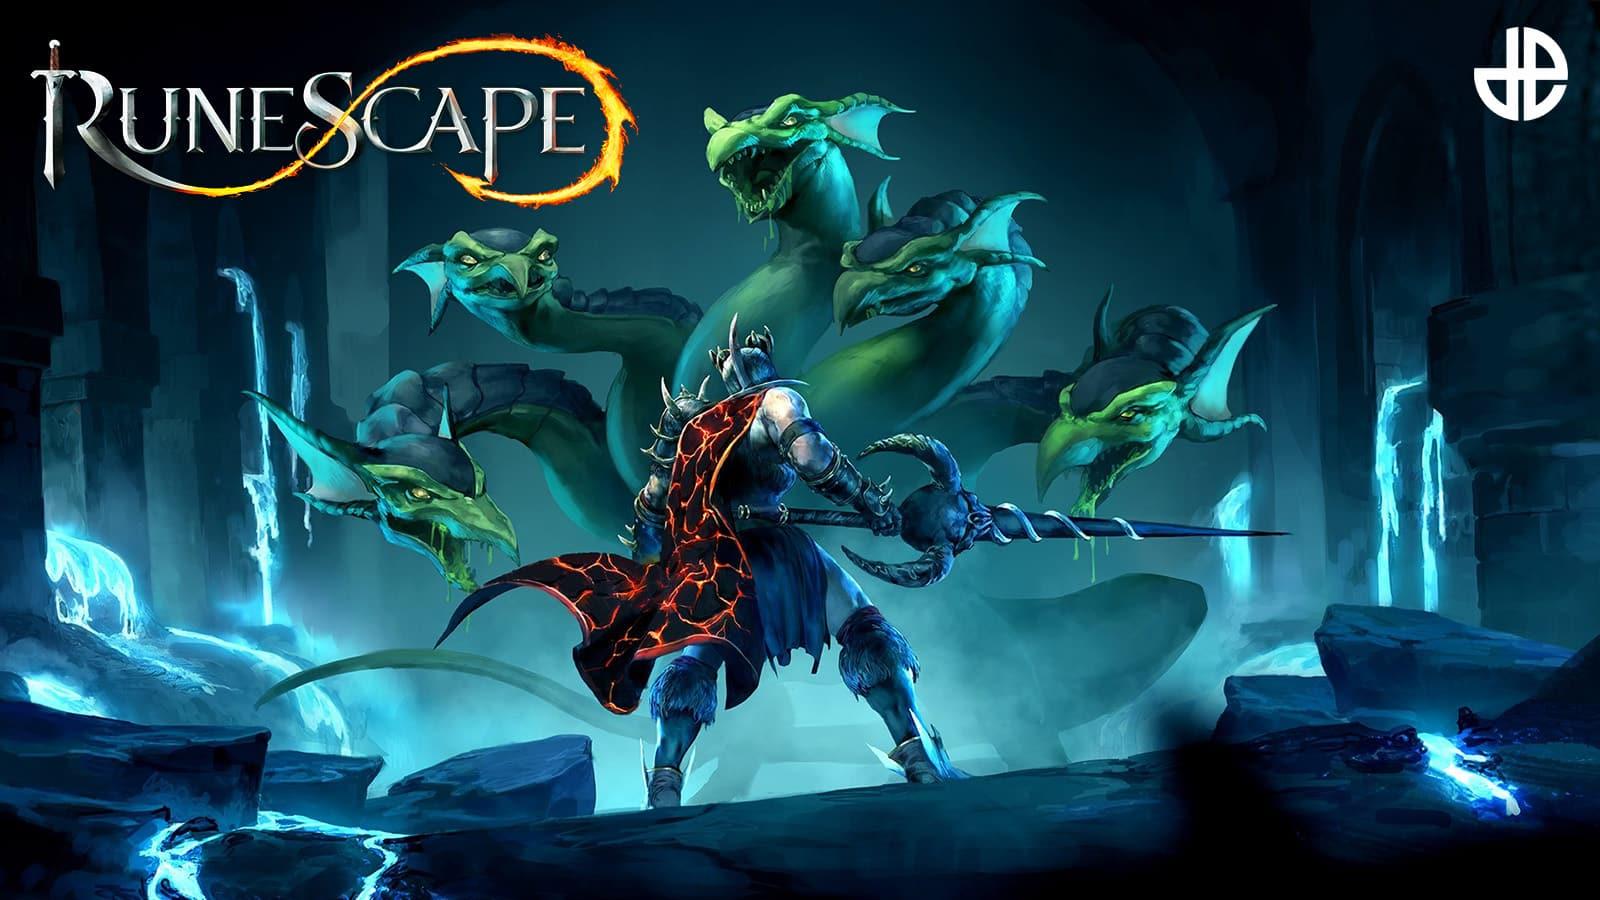 RuneScape 3: como criar uma conta e começar a jogar o MMORPG grátis